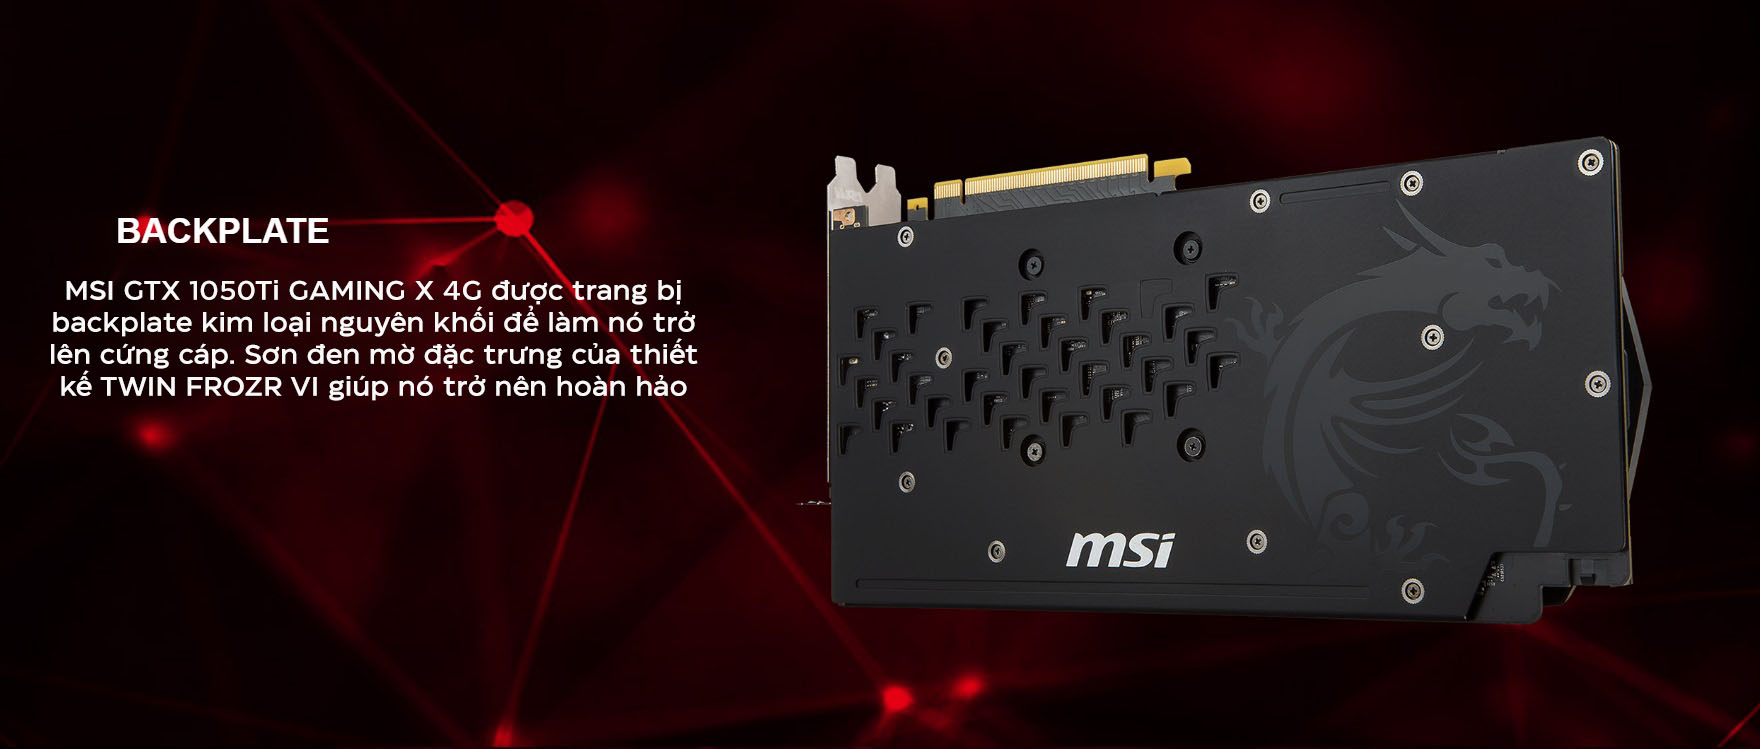 Card màn hình MSI GTX 1050Ti GAMING X 4G